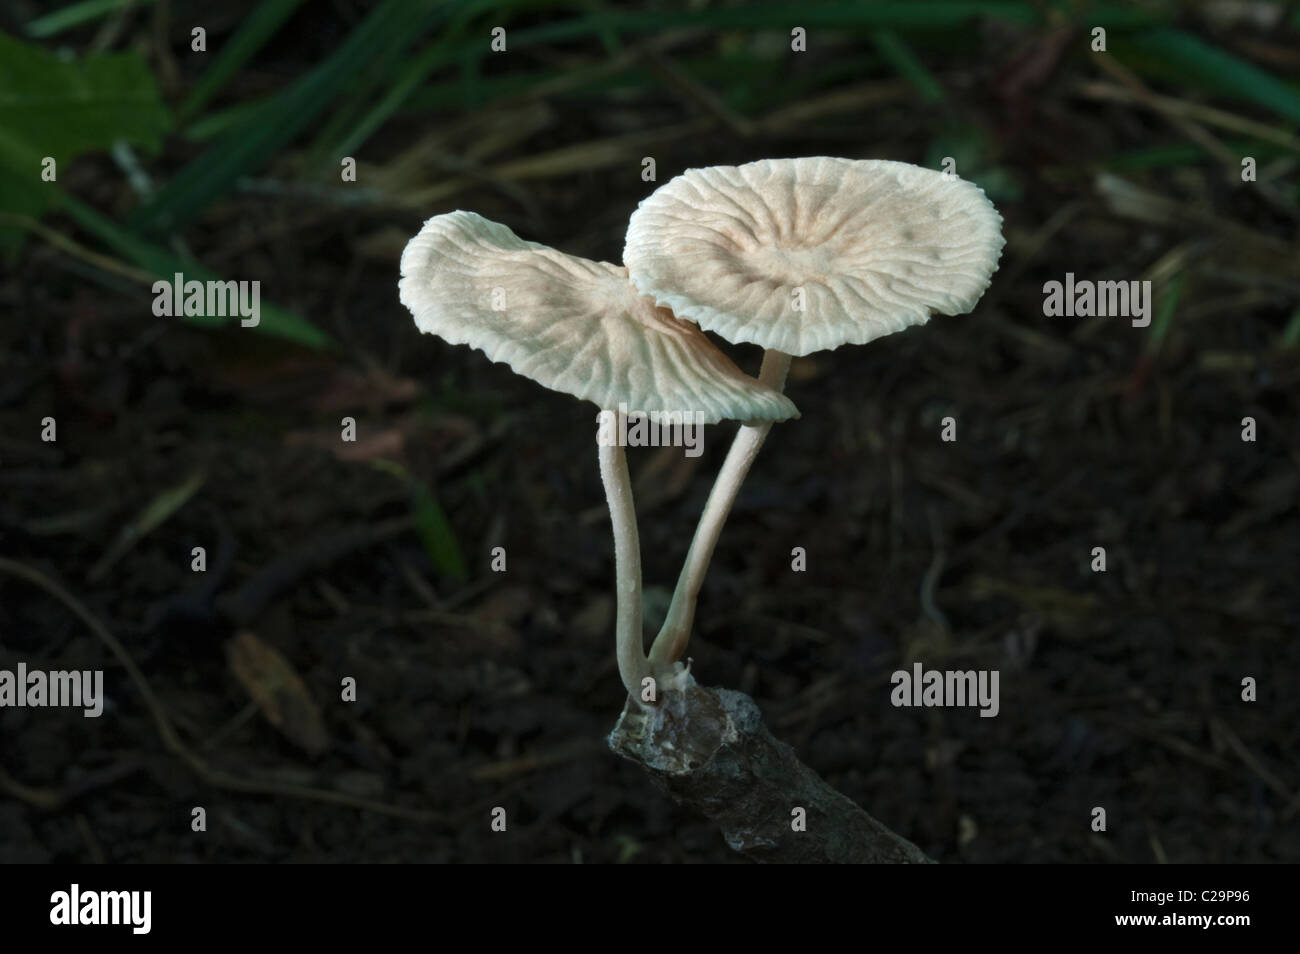 Marasmiellus mushroom (Marasmiellus candidus). Stock Photo